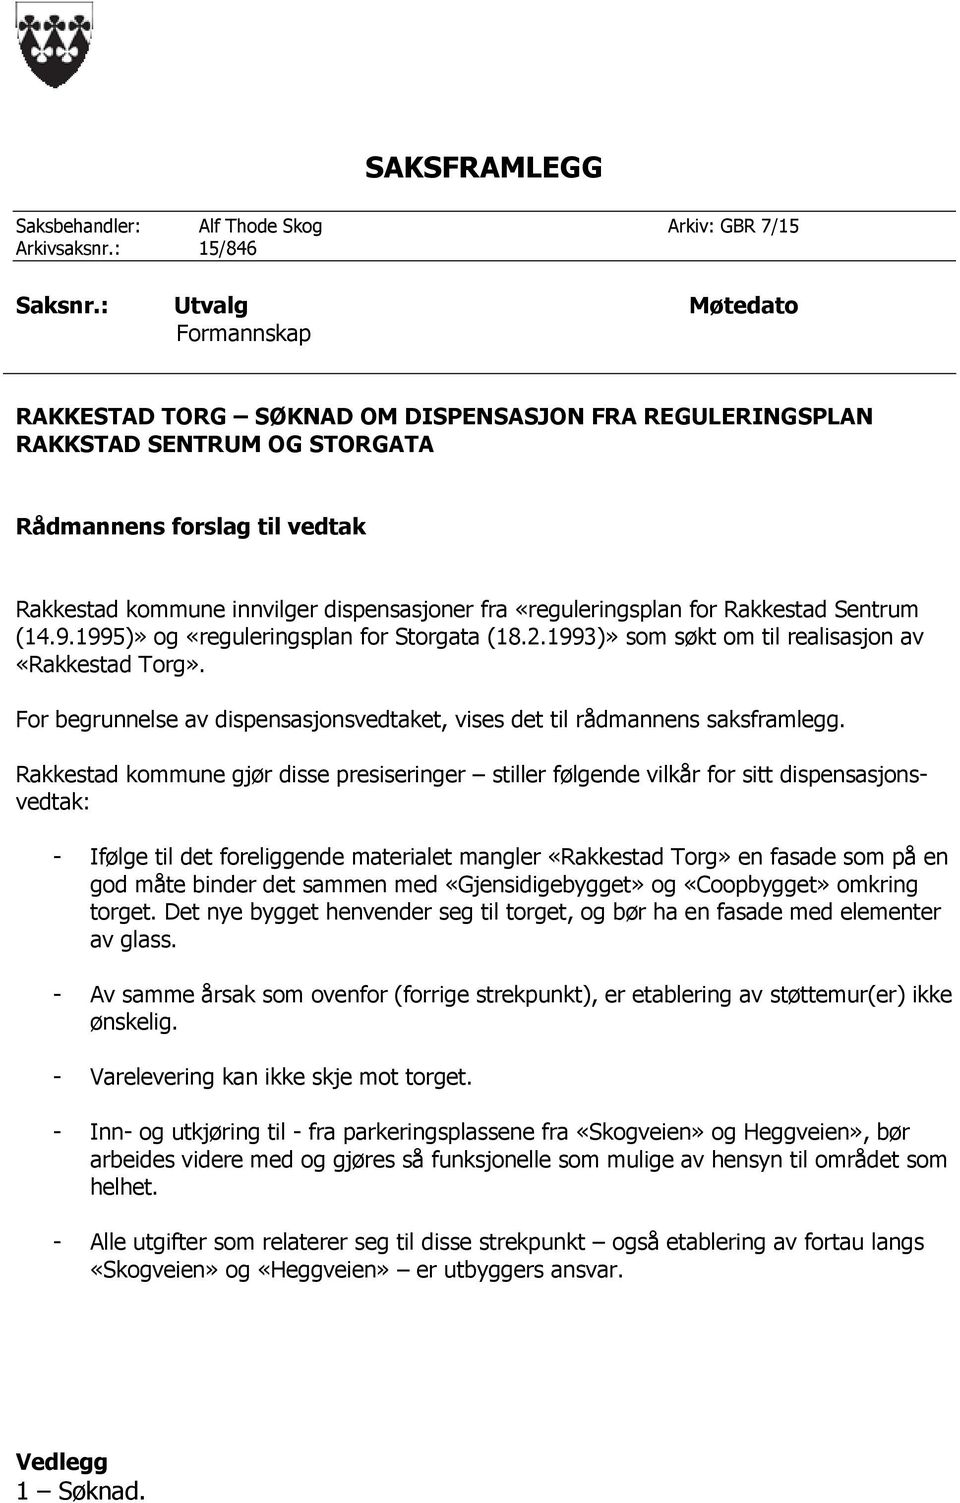 «reguleringsplan for Rakkestad Sentrum (14.9.1995)» og «reguleringsplan for Storgata (18.2.1993)» som søkt om til realisasjon av «Rakkestad Torg».